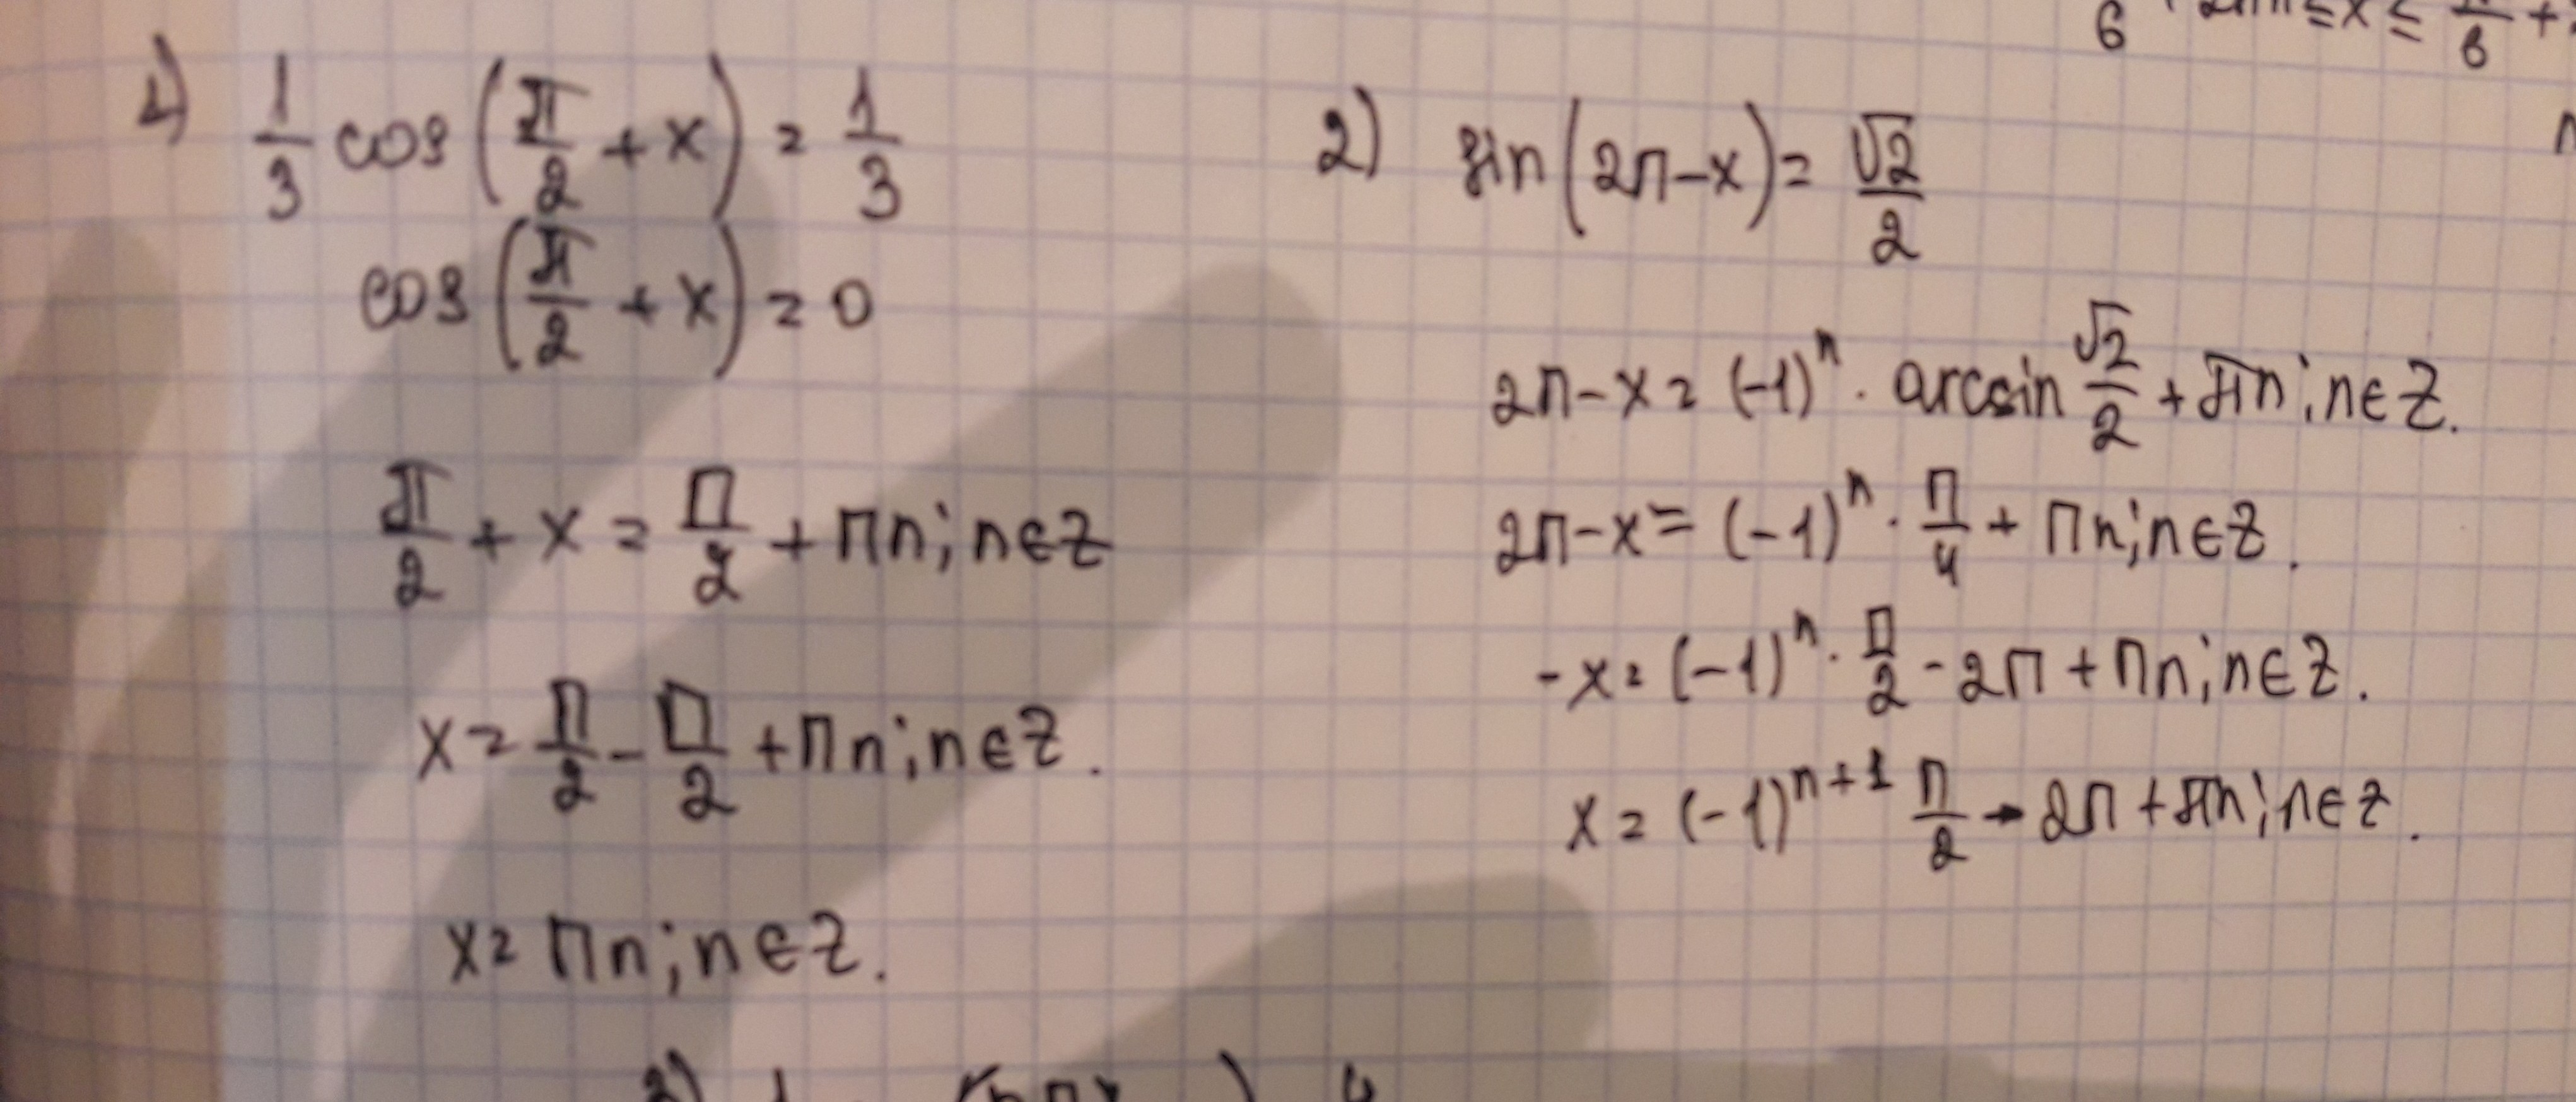 1 1 x 0 2π. Cos x/3 -1/2. Cos(π2−x). Cos π/2. Cos π(x+2)/3 = 1/2 решение.